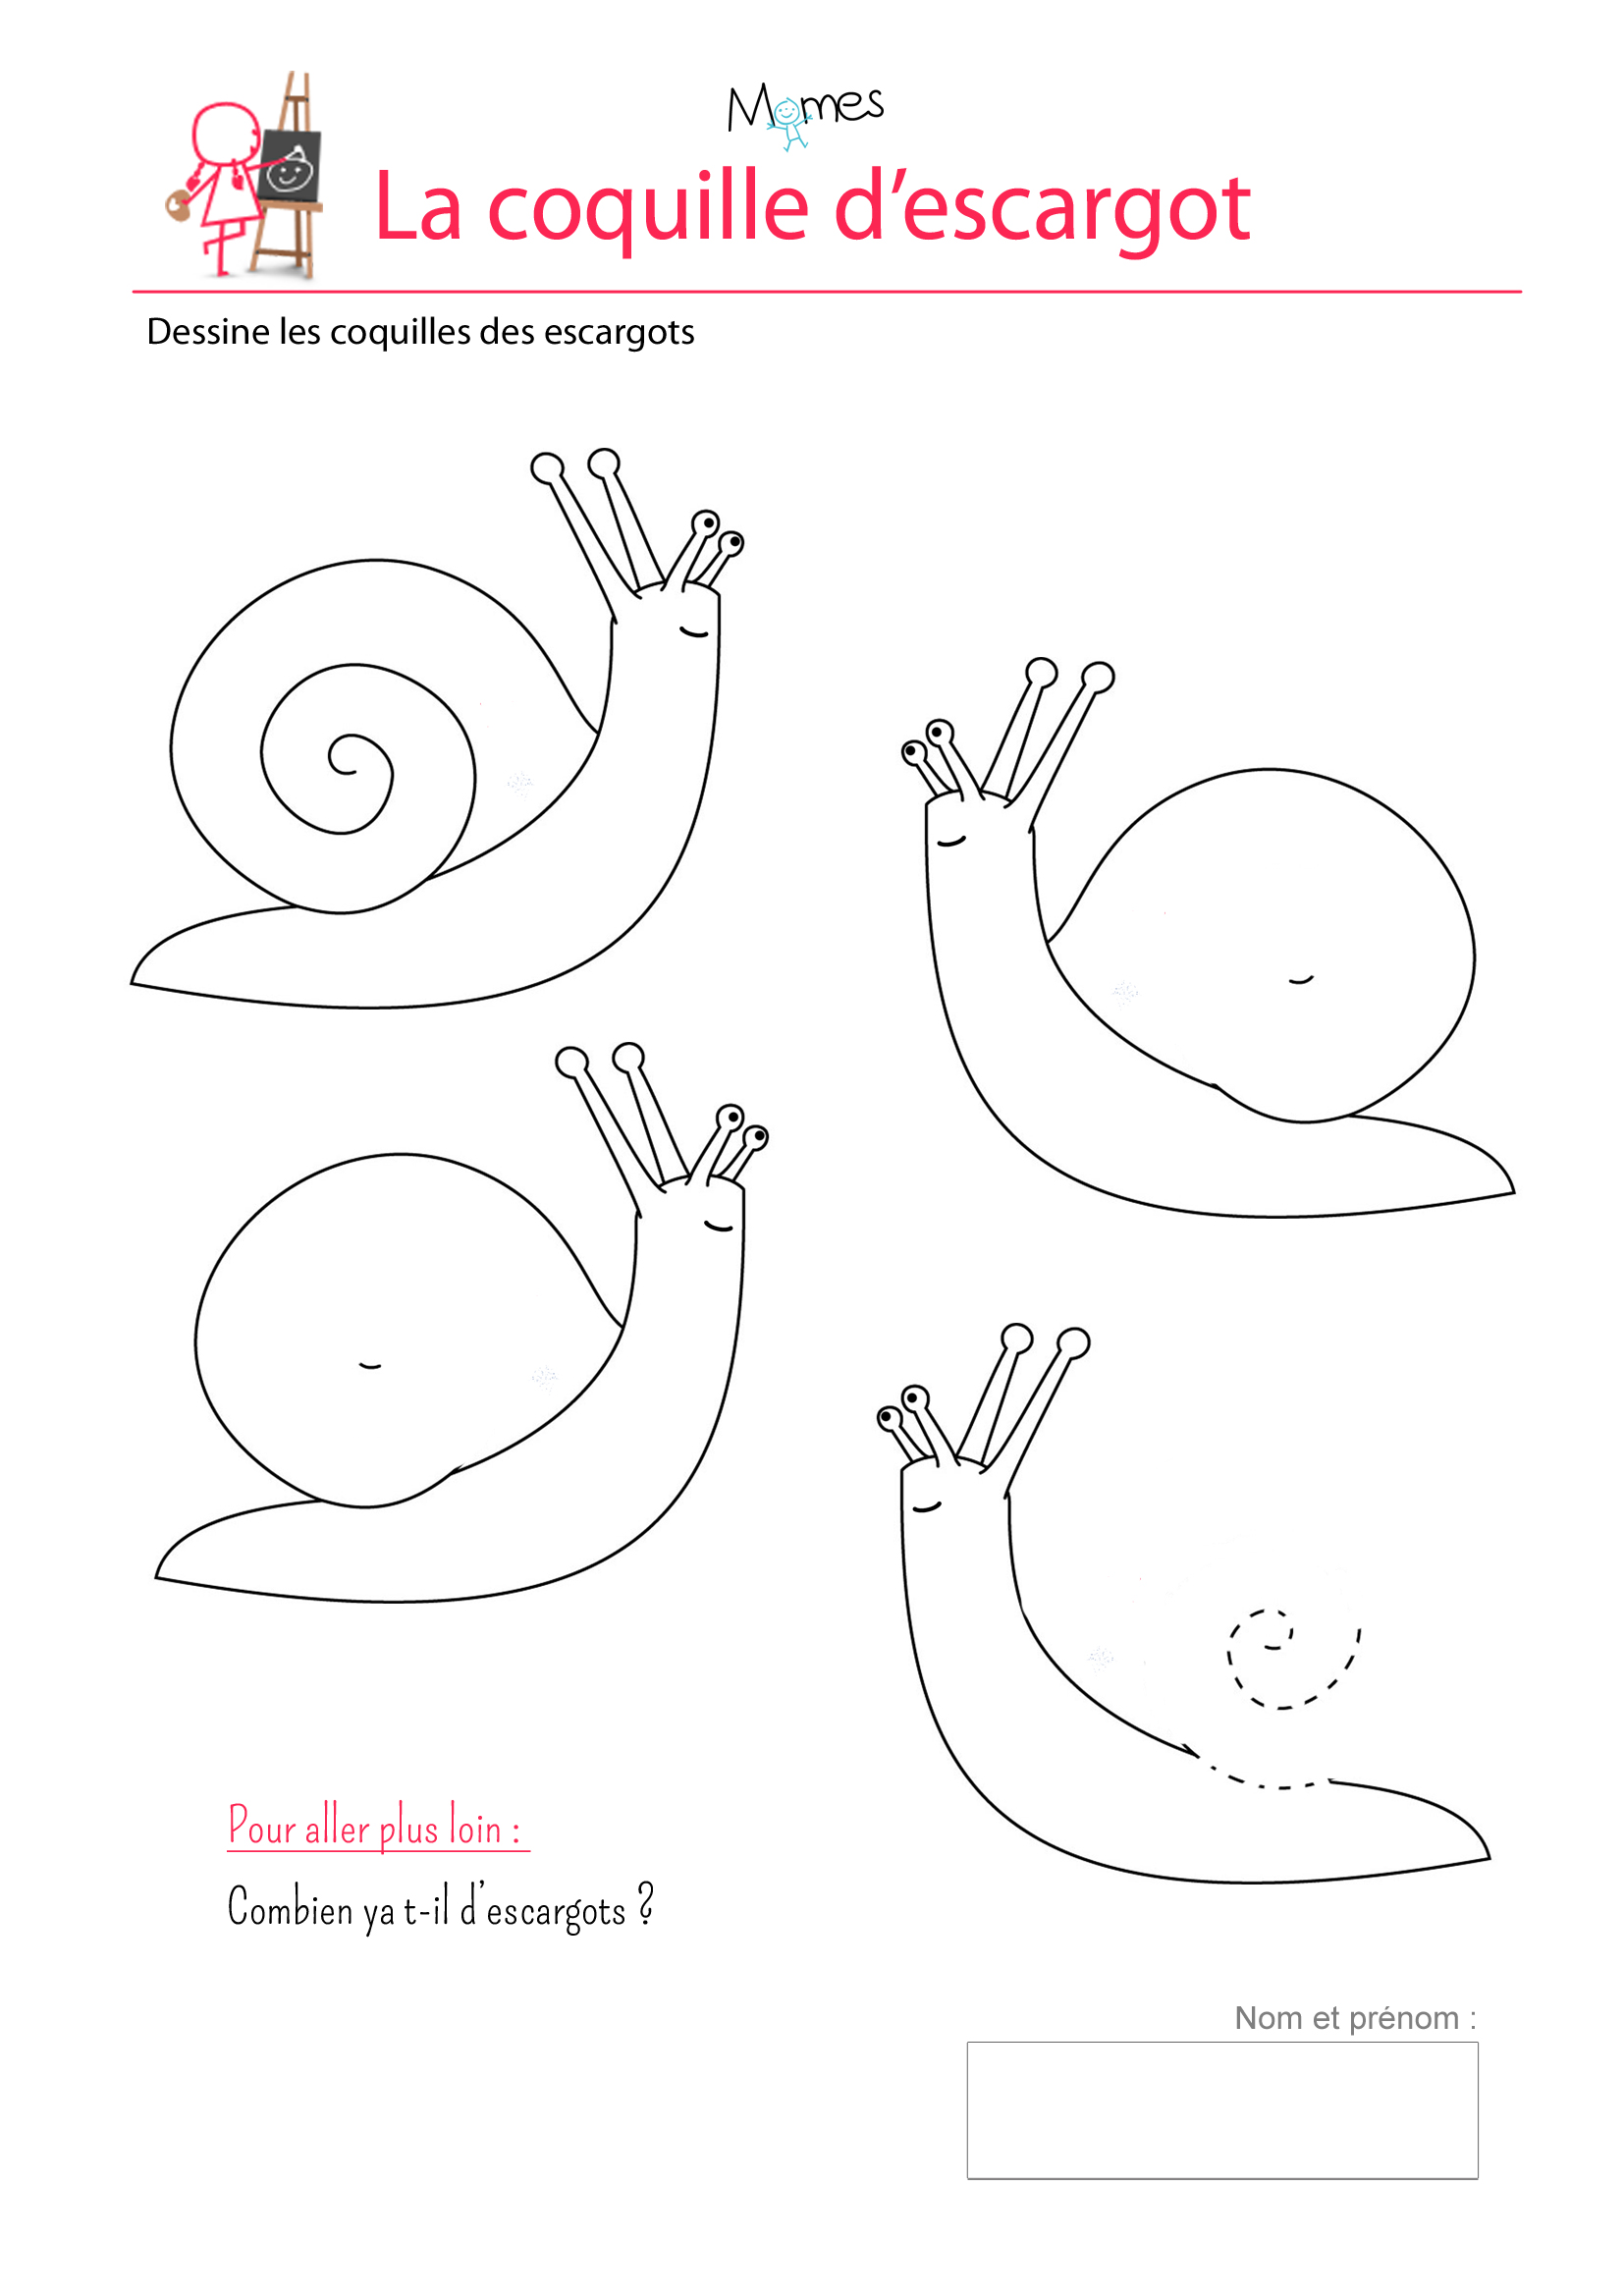 Les coquilles d'escargots - exercice sur les spirales ...